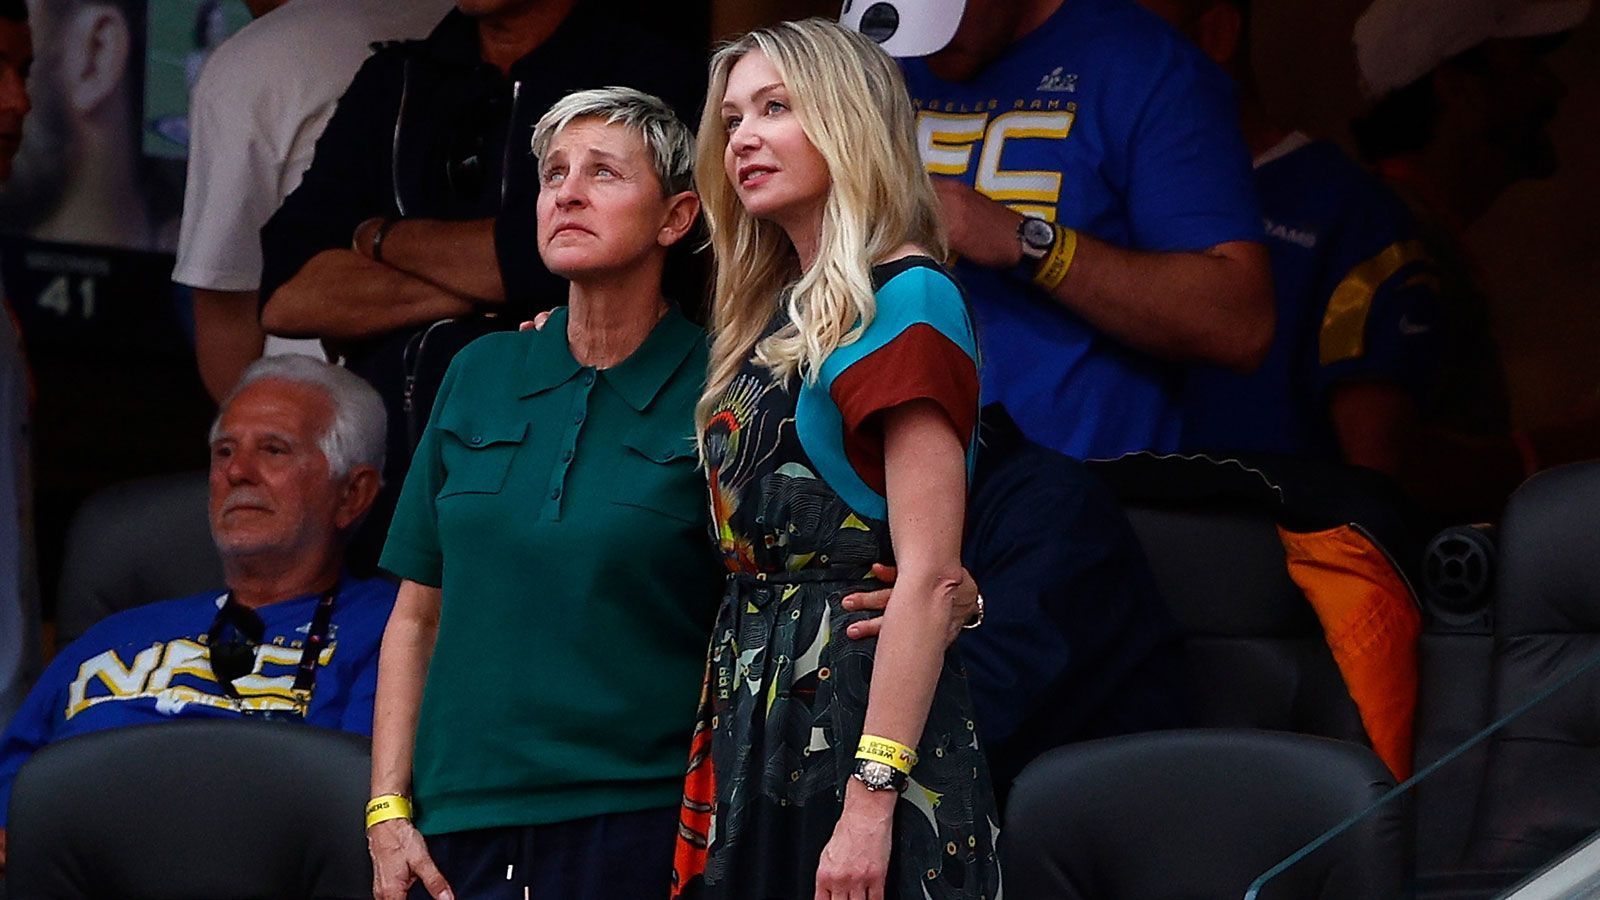 
                <strong>Ellen DeGeneres und Portia de Rossi</strong><br>
                Mit ihrer Partnerin Portia de Rossi (r.) schaute Moderatorin Ellen DeGeneres im SoFi Stadium vorbei. Der Blick ging gen Videoleinwand - werden wir gefilmt?
              